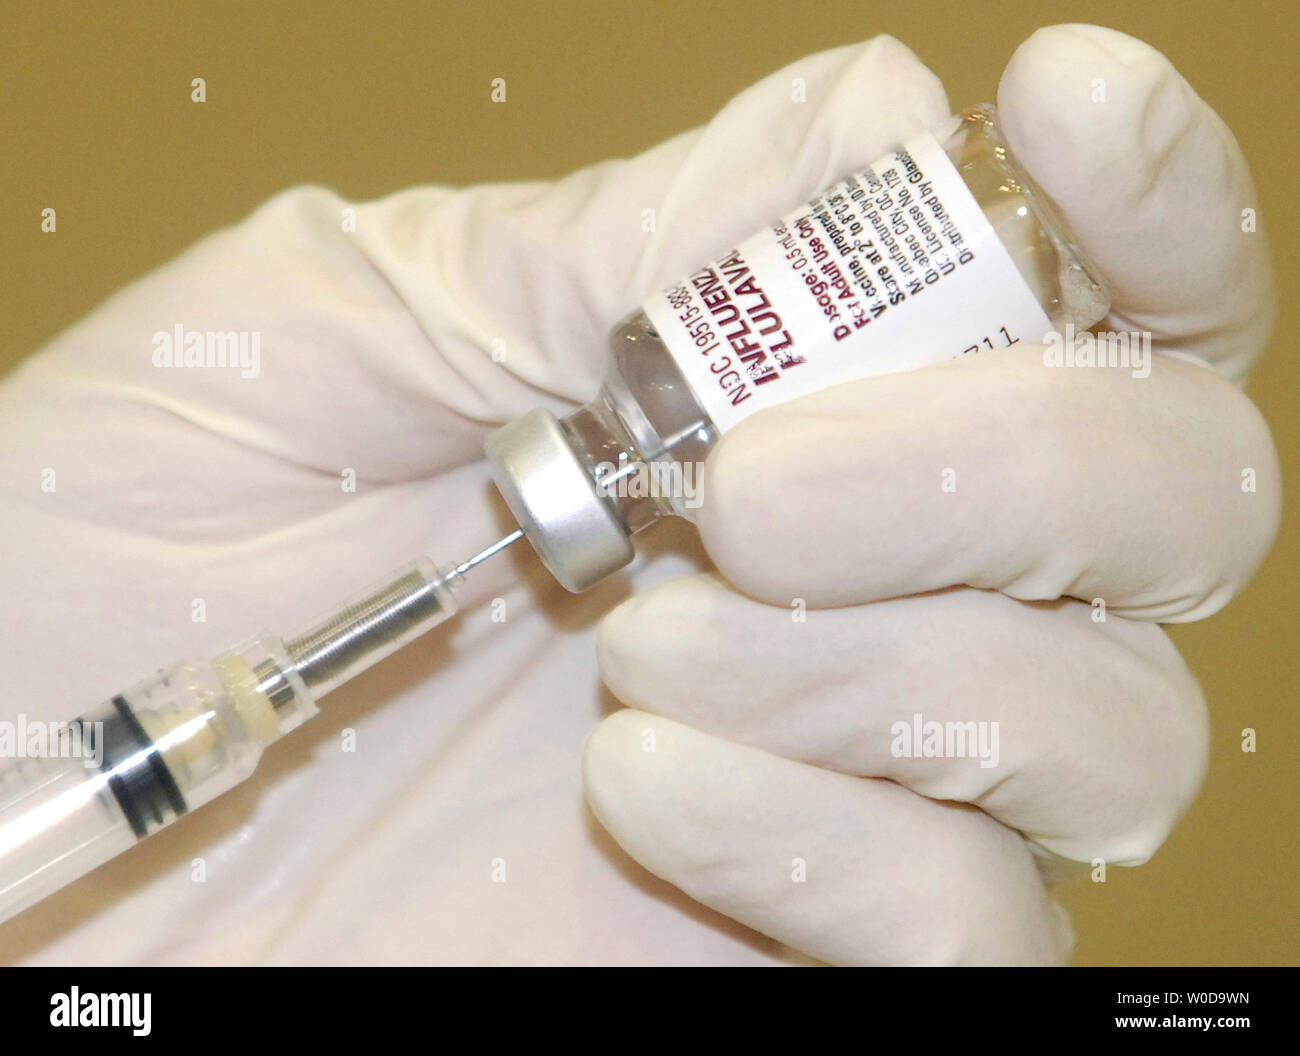 L'infermiera Jane Johnson del Dipartimento della sanità e dei Servizi Umani prepara il vaccino antinfluenzale in un kick off per il programma nazionale di vaccinazione influenzale settimana a Washington il 27 novembre 2006. (UPI foto/Kevin Dietsch) Foto Stock